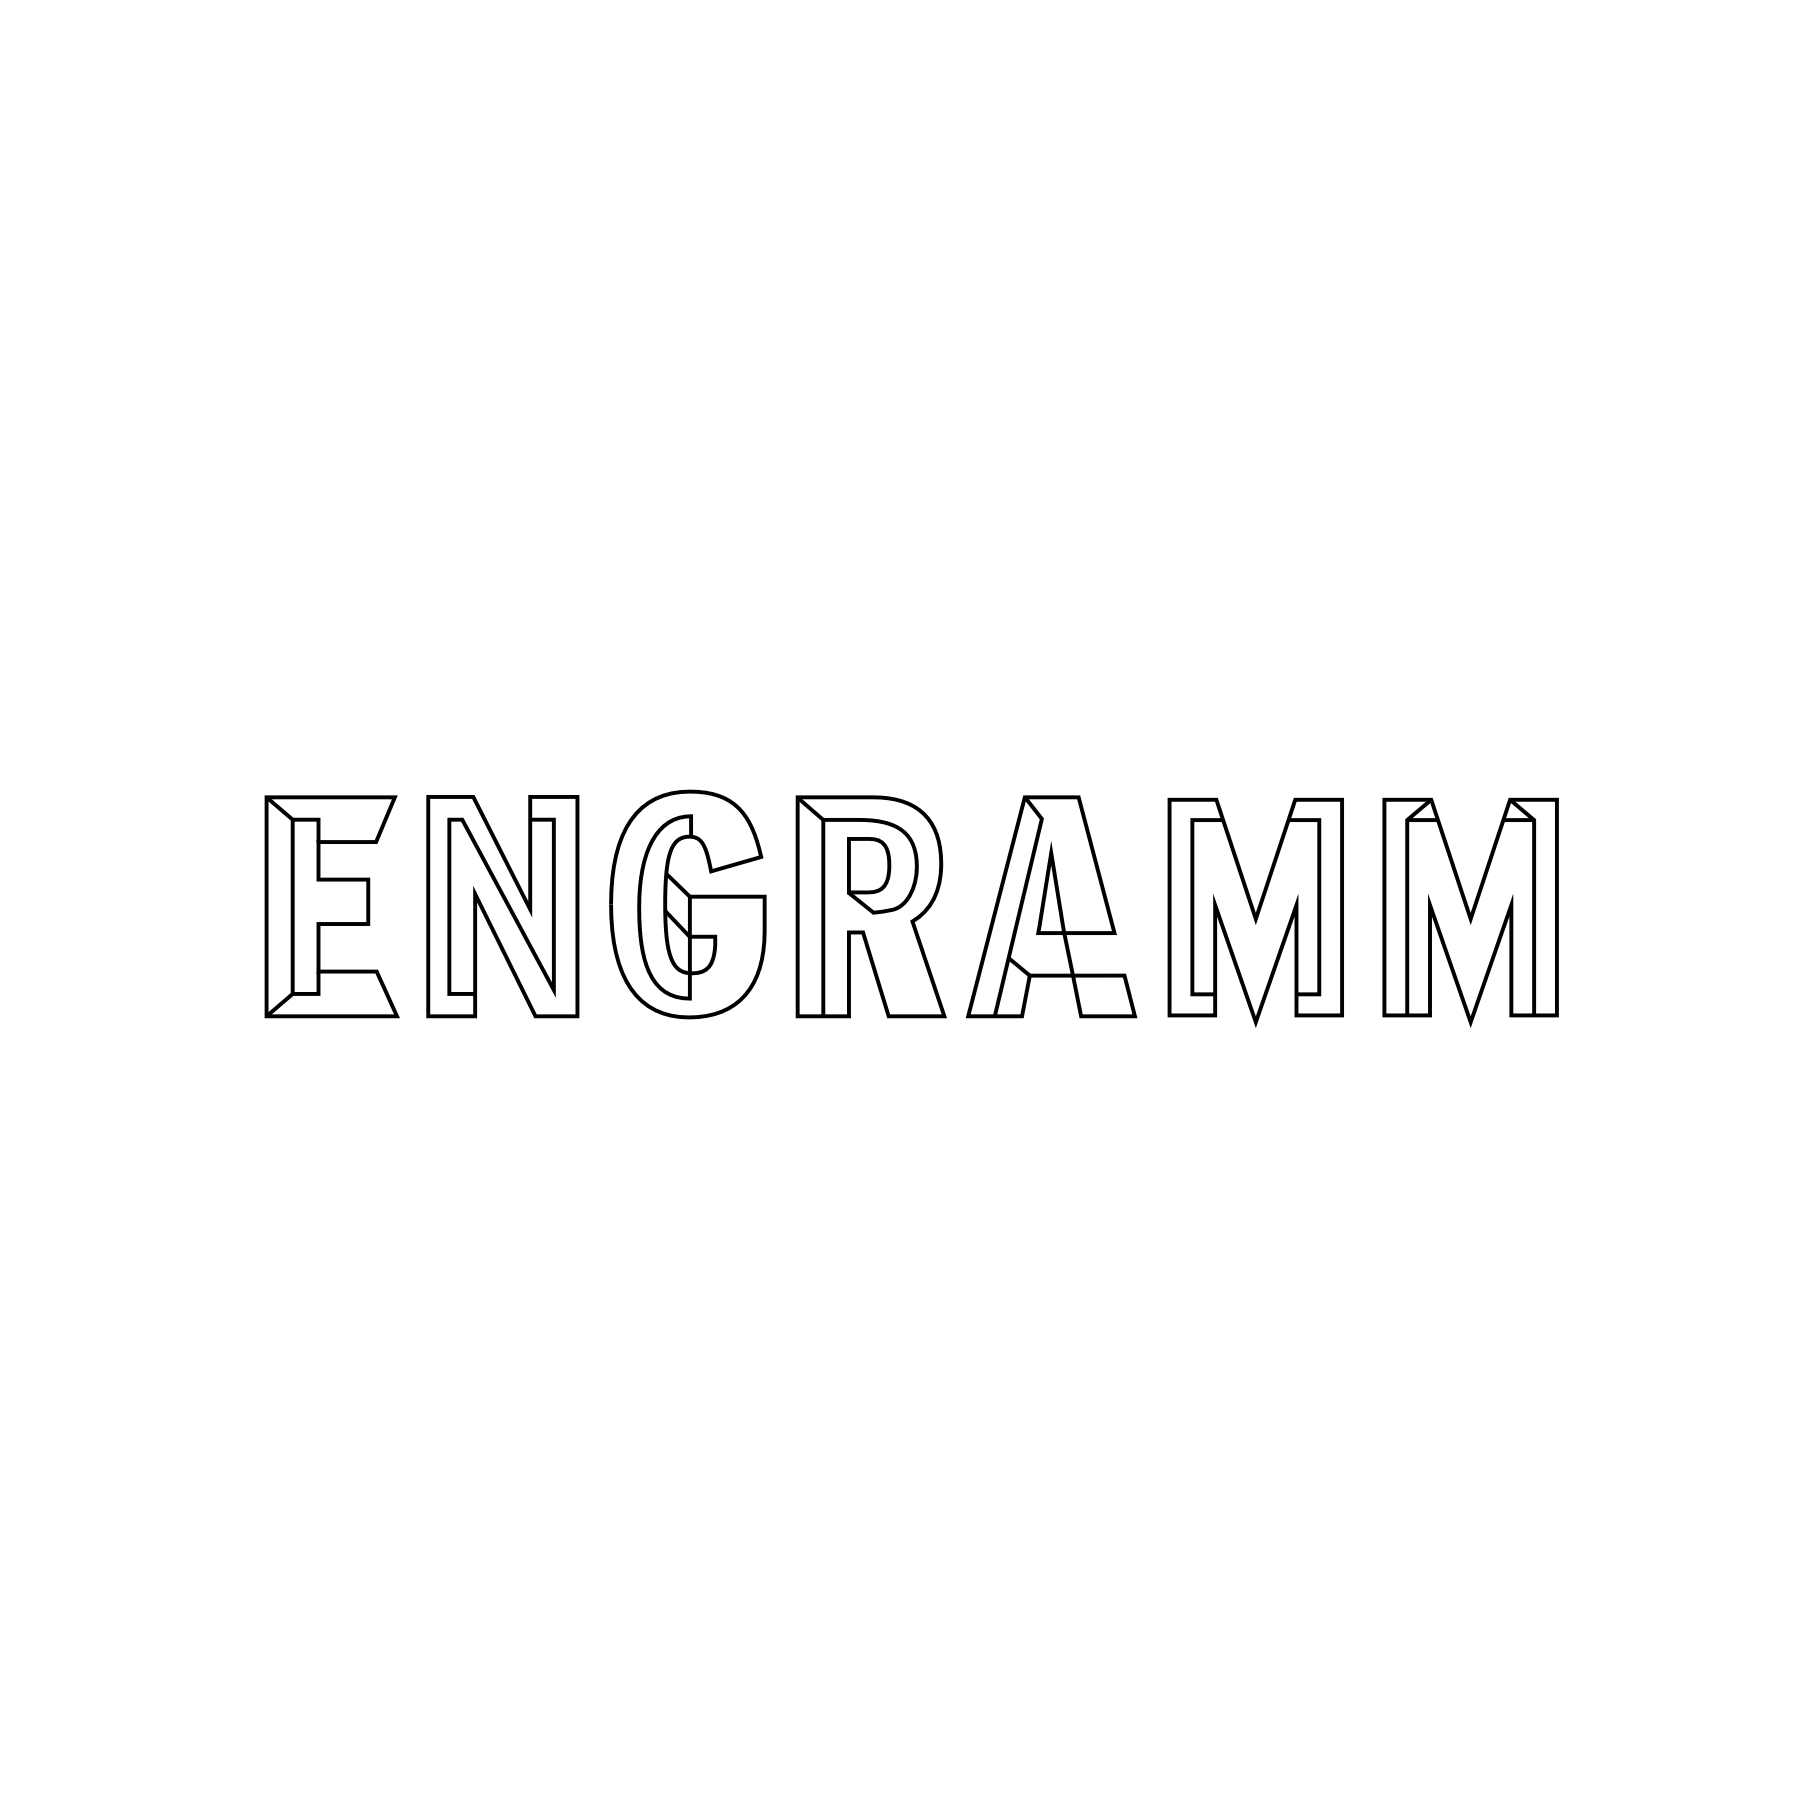 (c) Engramm.com